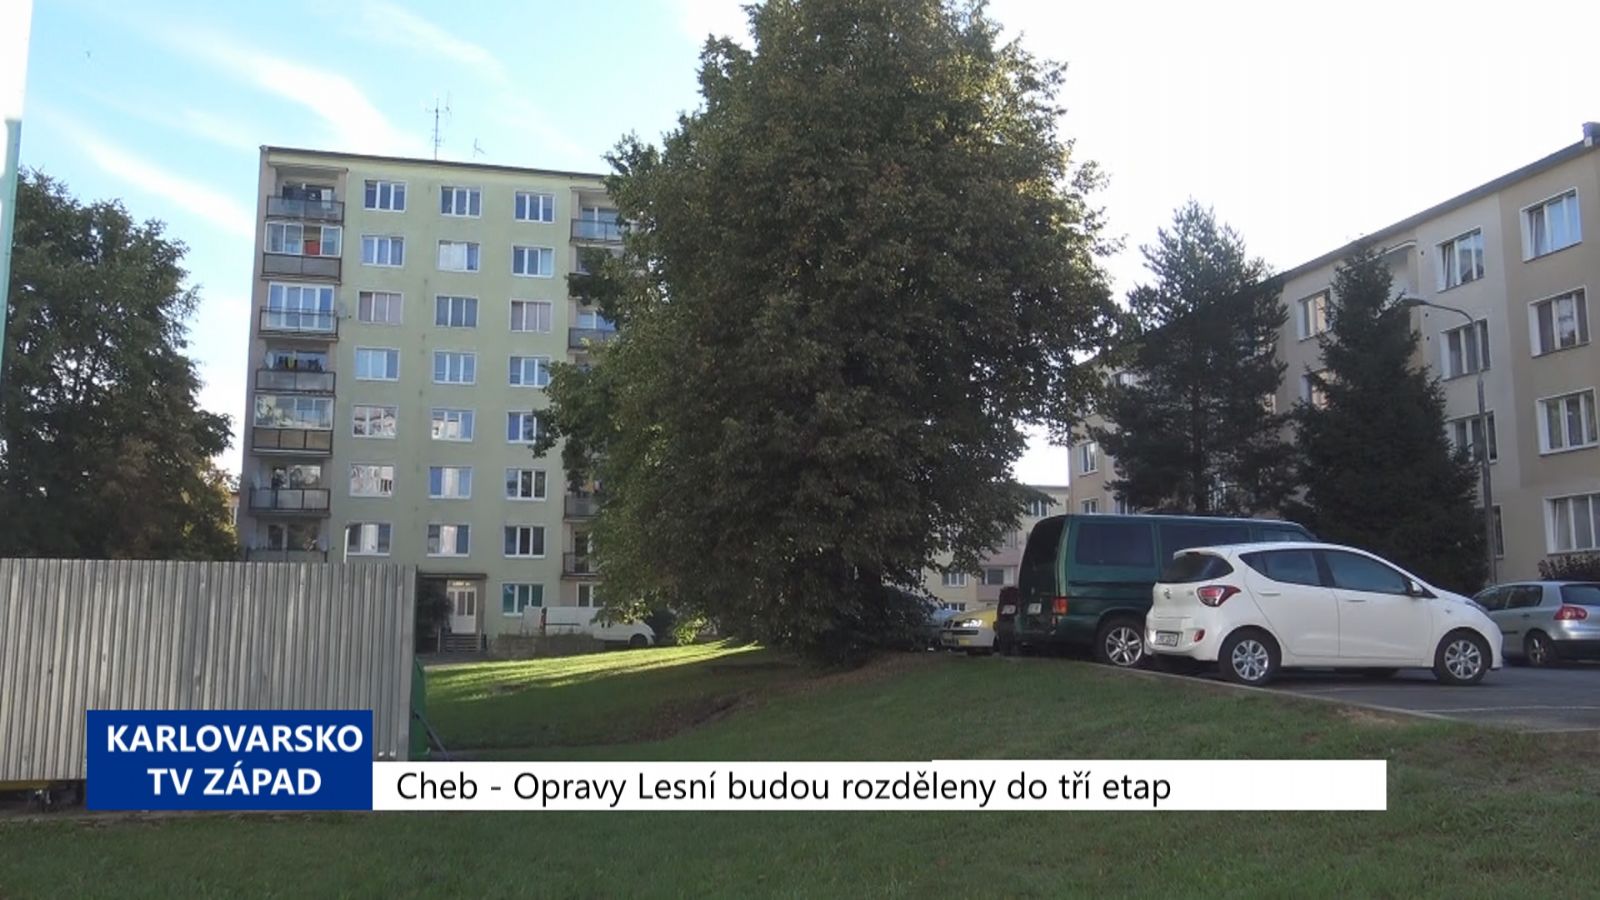 Cheb: Opravy Lesní budou rozděleny do tří etap (TV Západ)